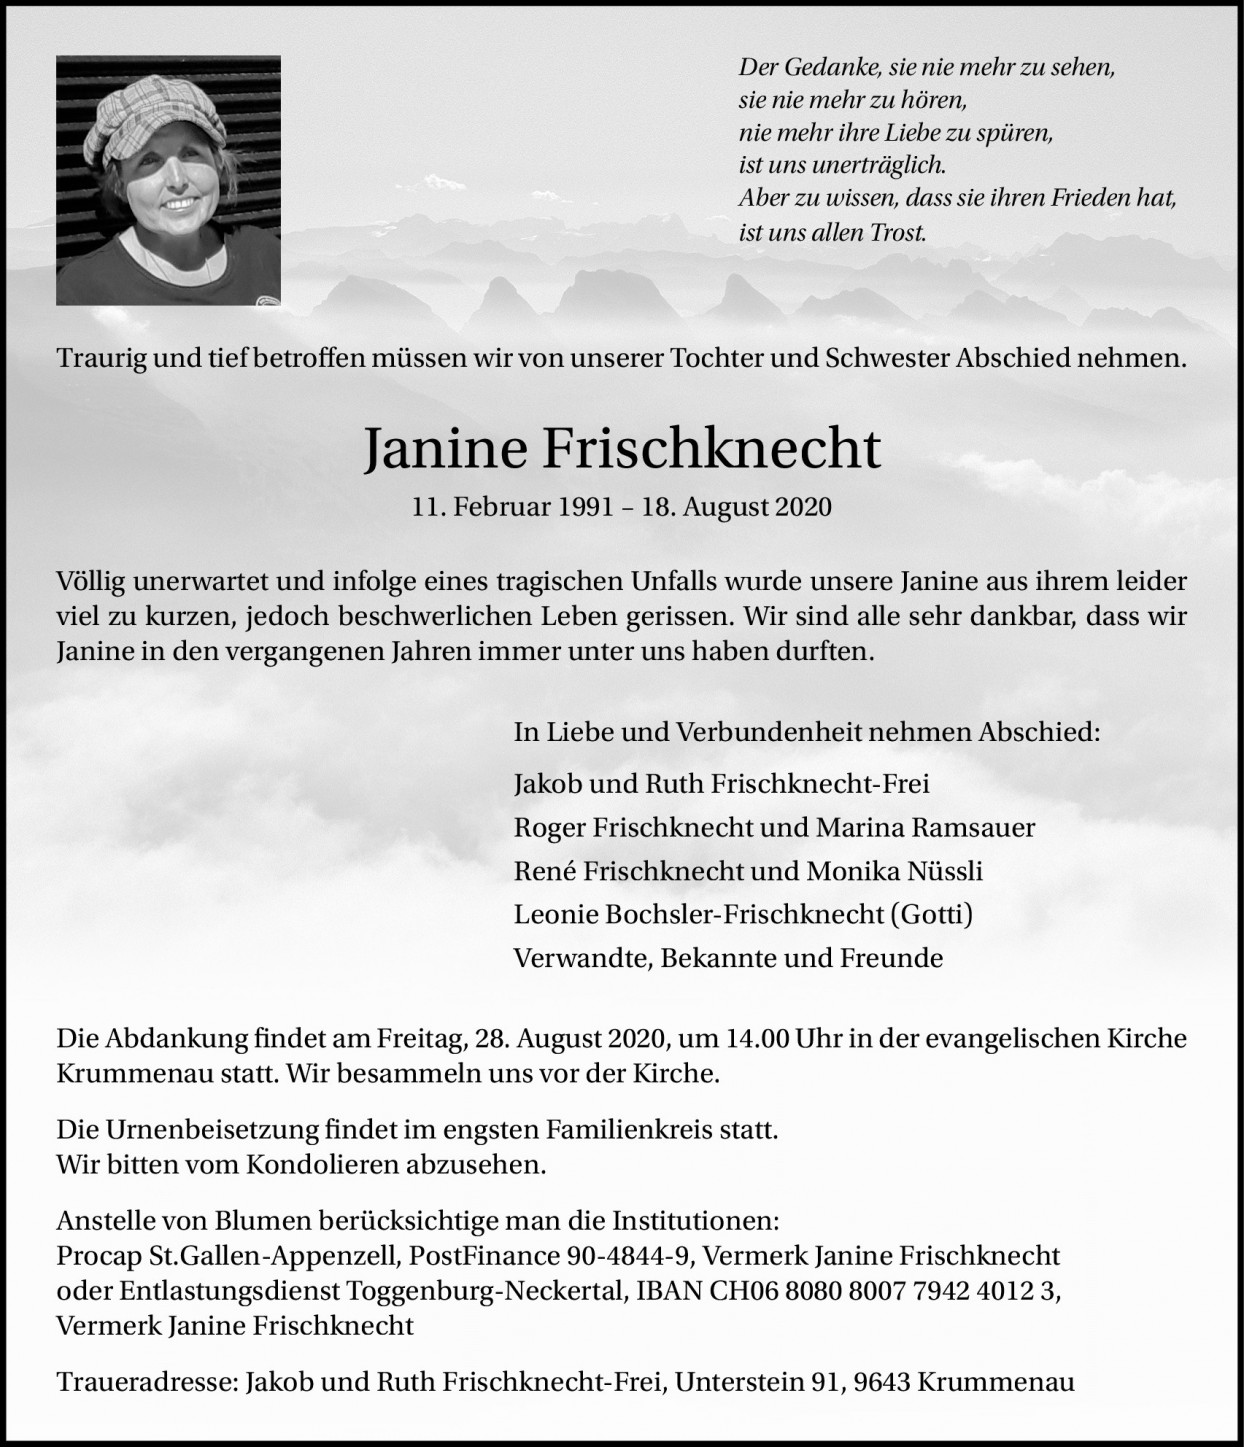 Janine Frischknecht